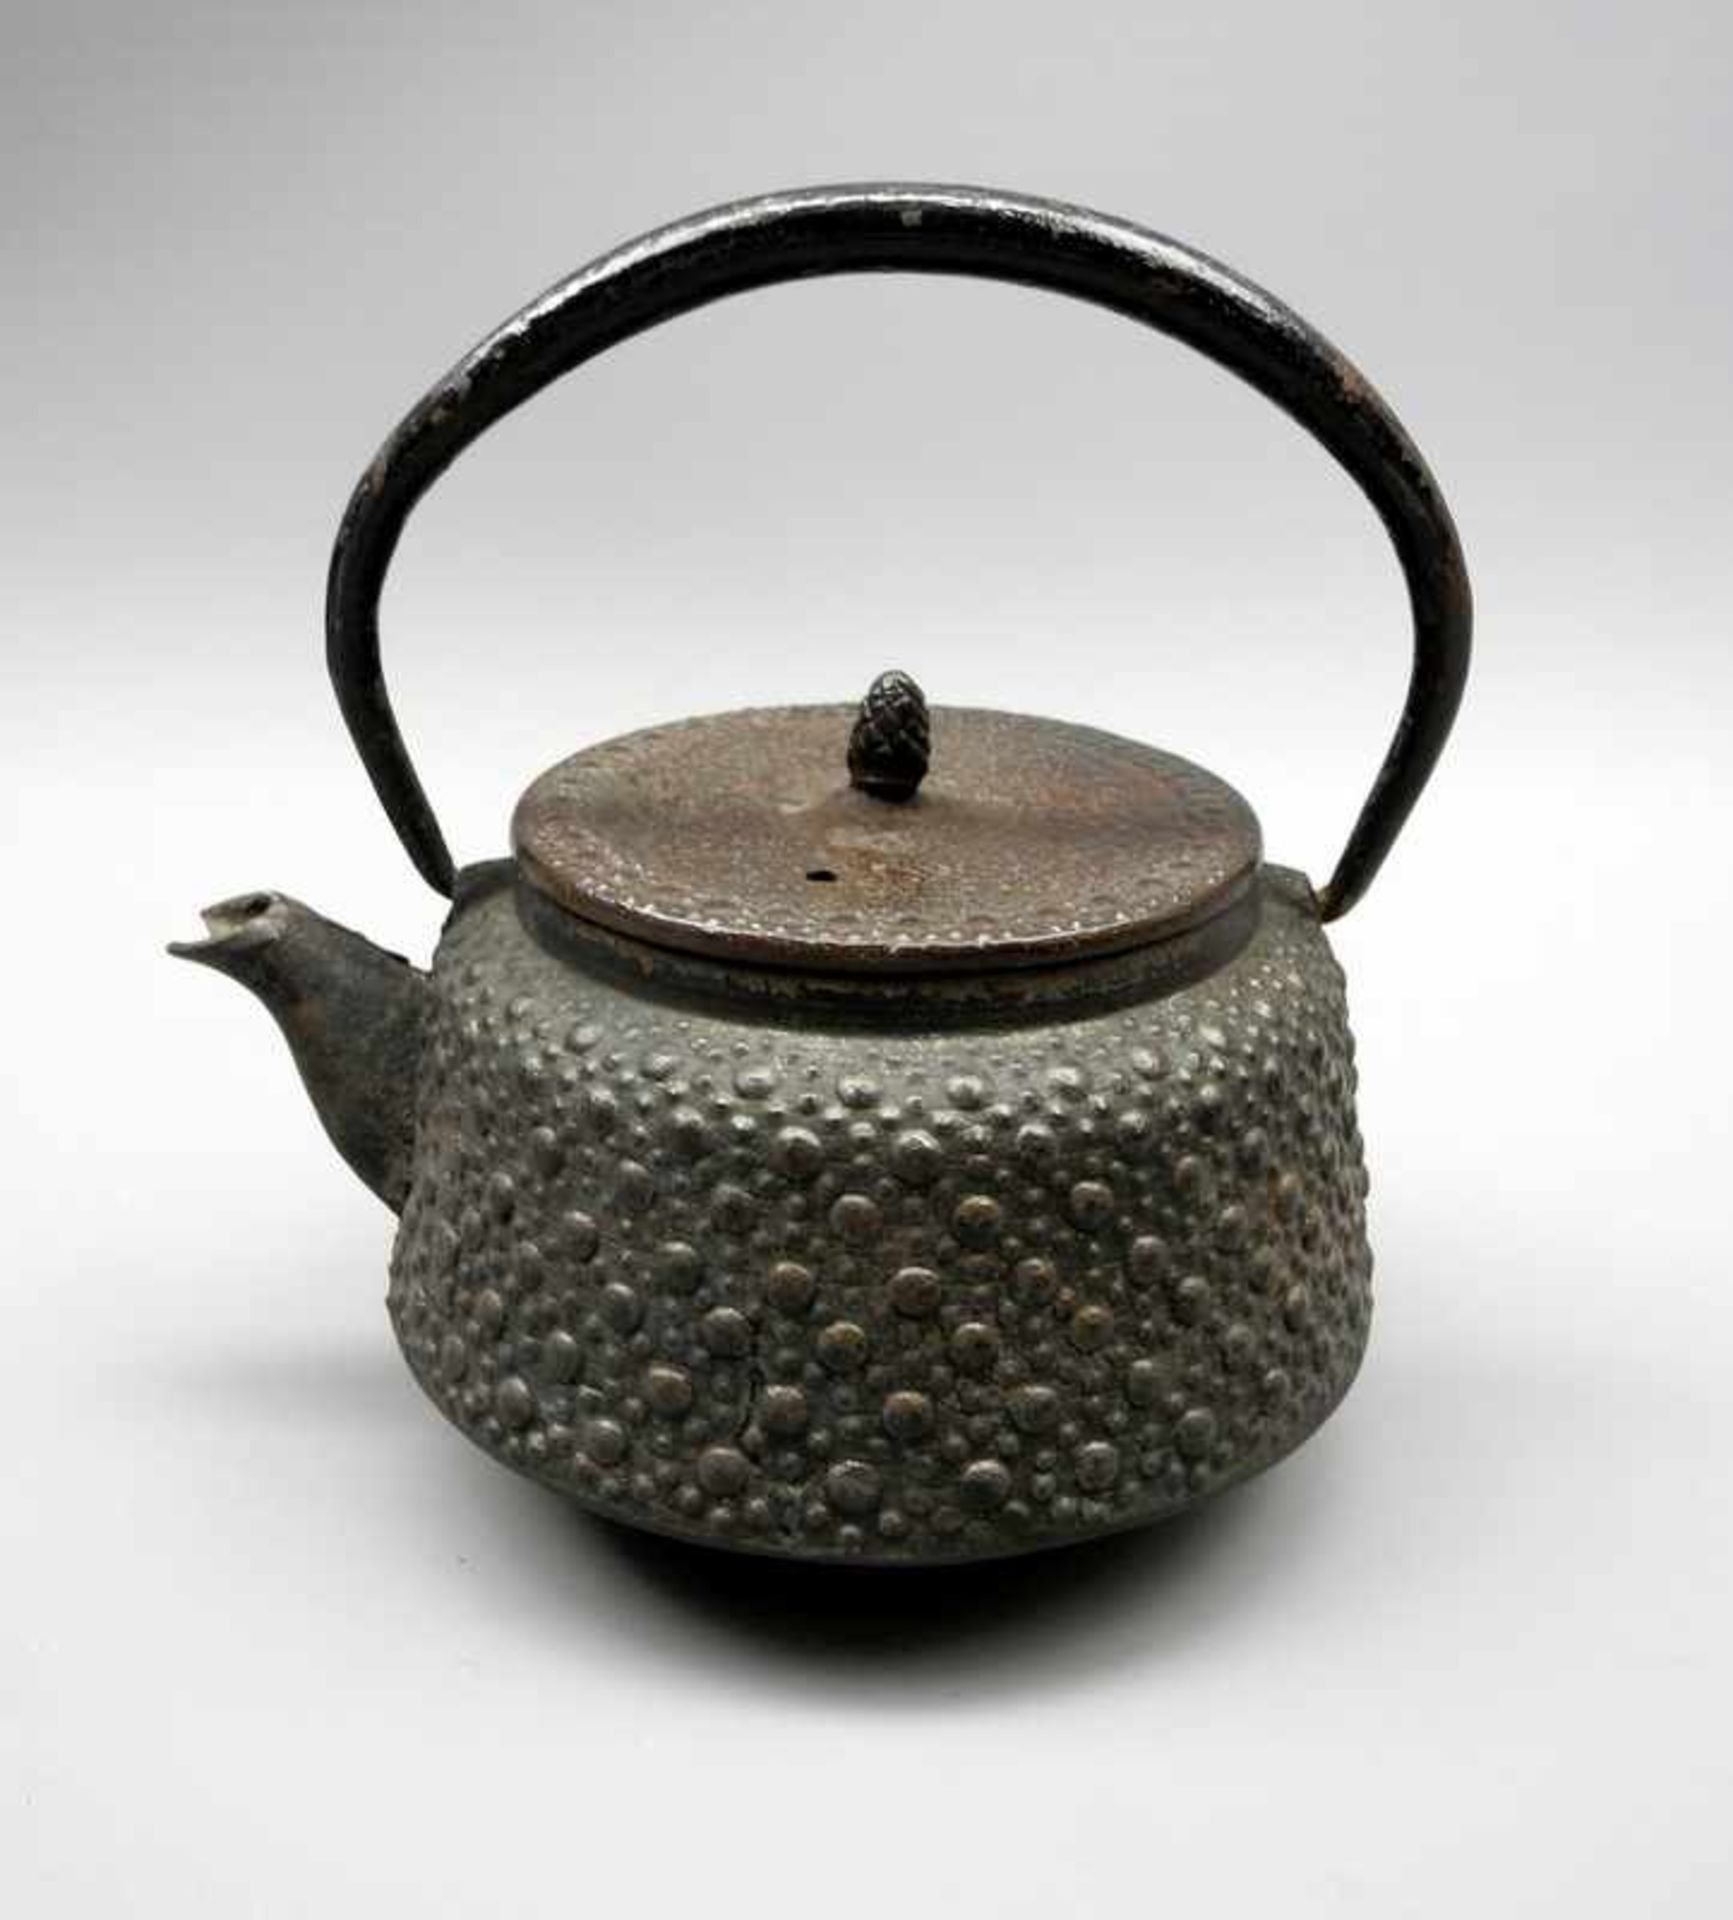 Kleine japanische TeekanneEisen. Kleine Teekanne mit kantig-rundem Korpus, umlaufendem